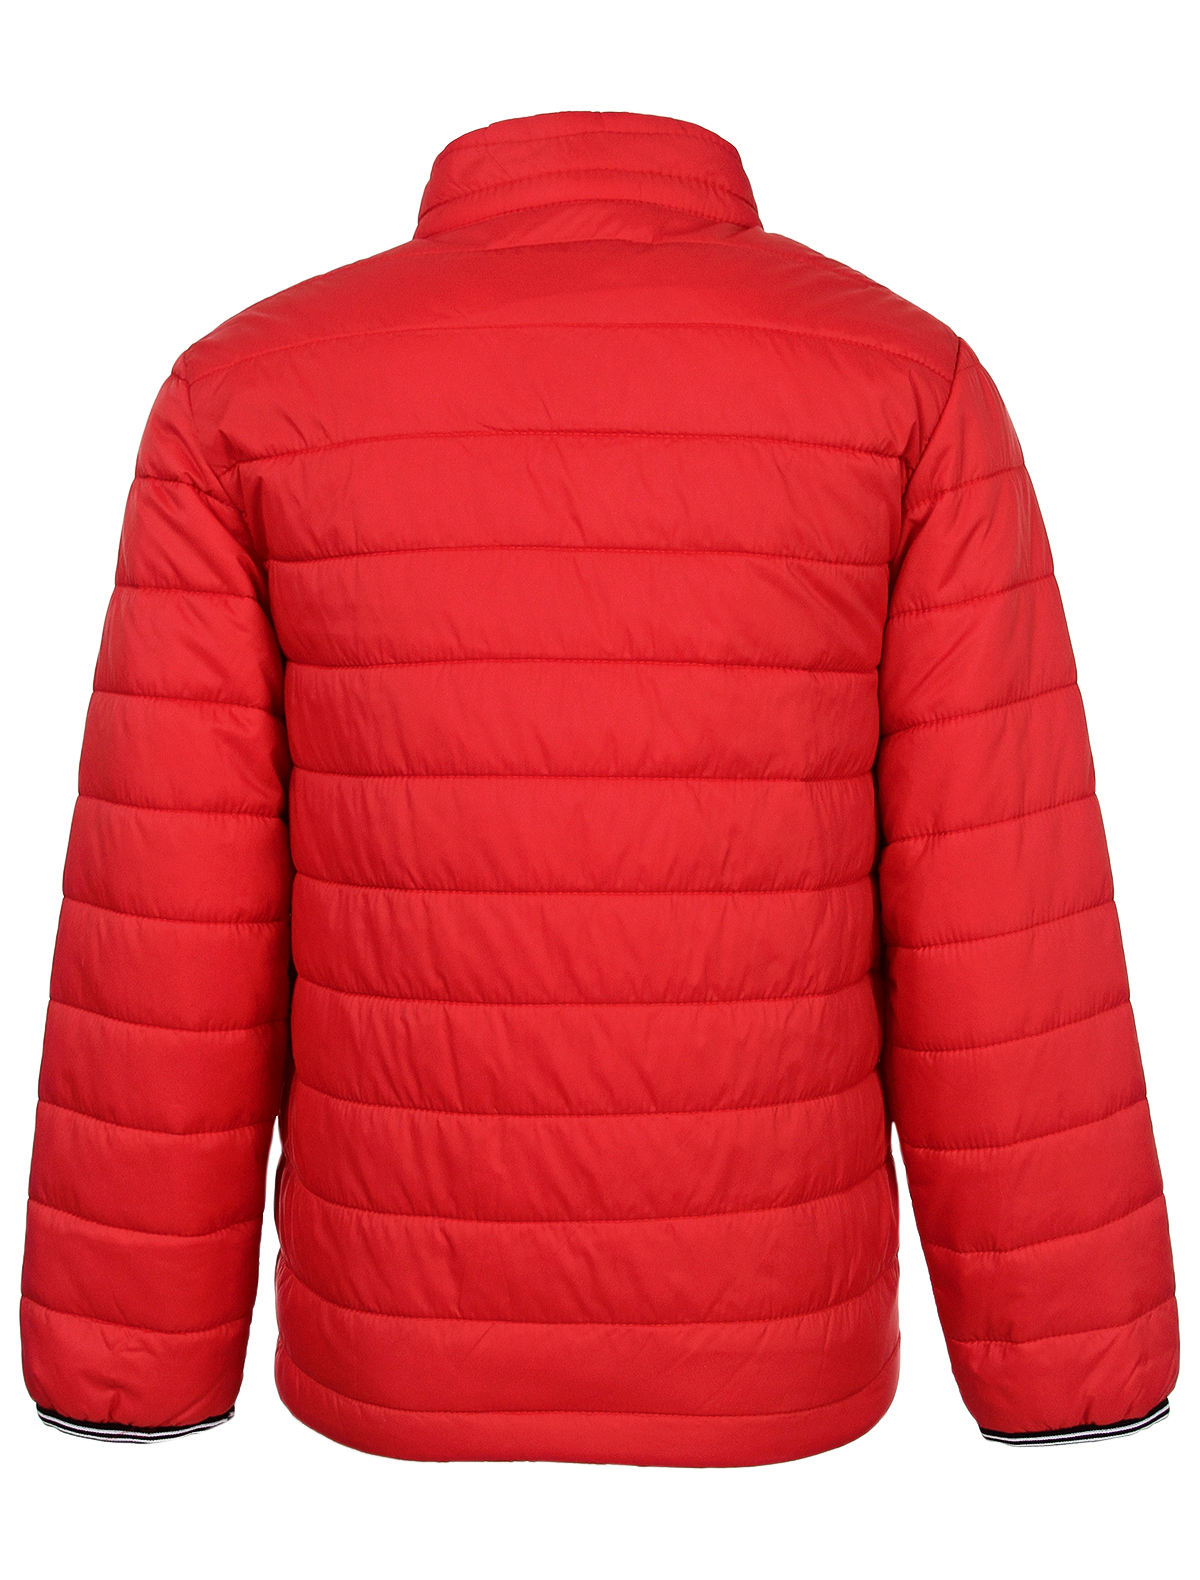 Куртка Mayoral 2546200, цвет красный, размер 2 1074519372230 - фото 2